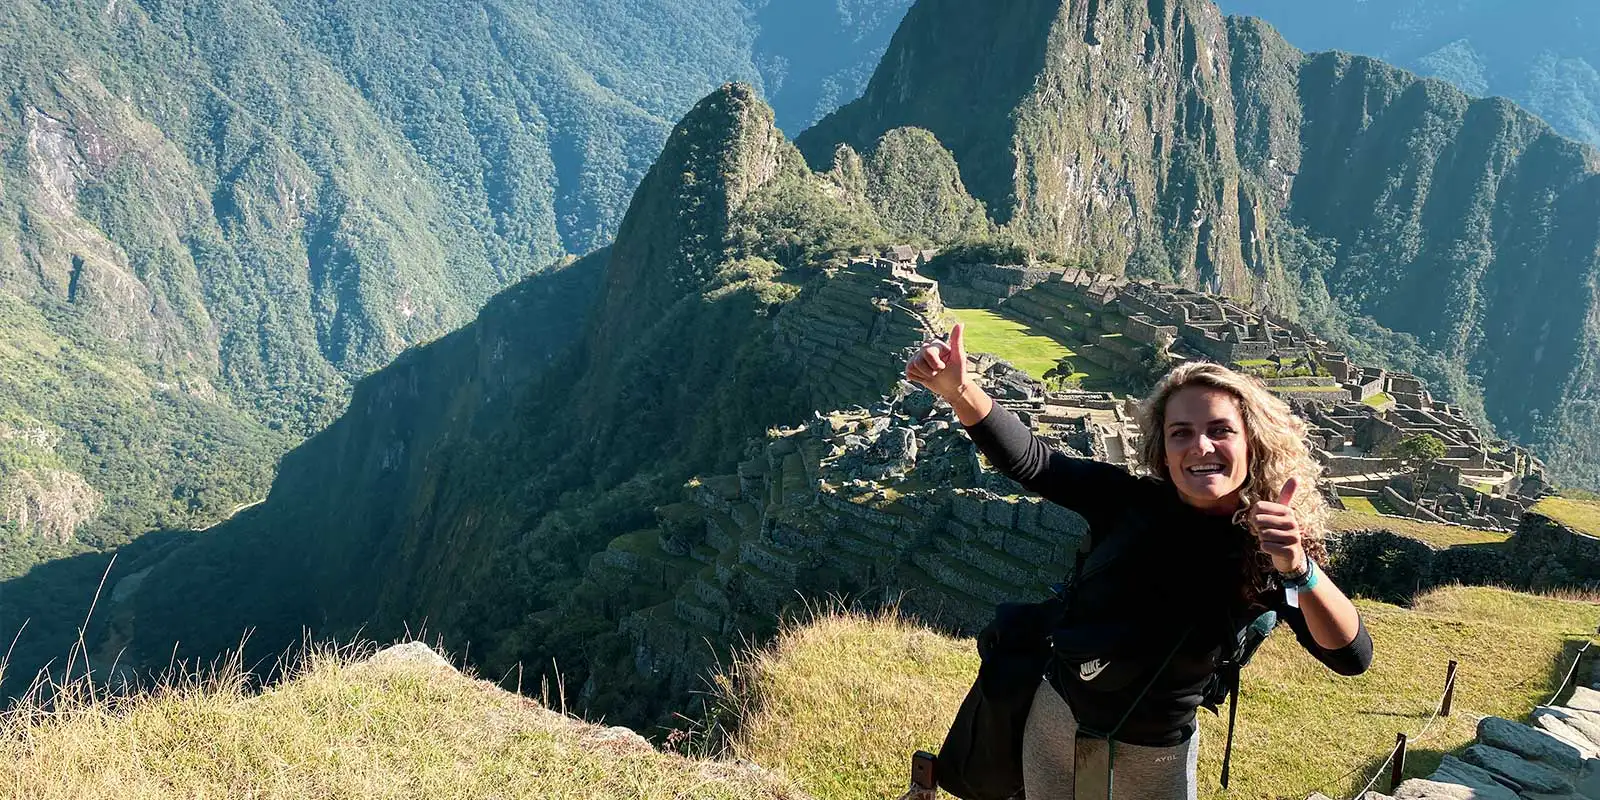 Recomendações para visitar Machu Picchu 2023